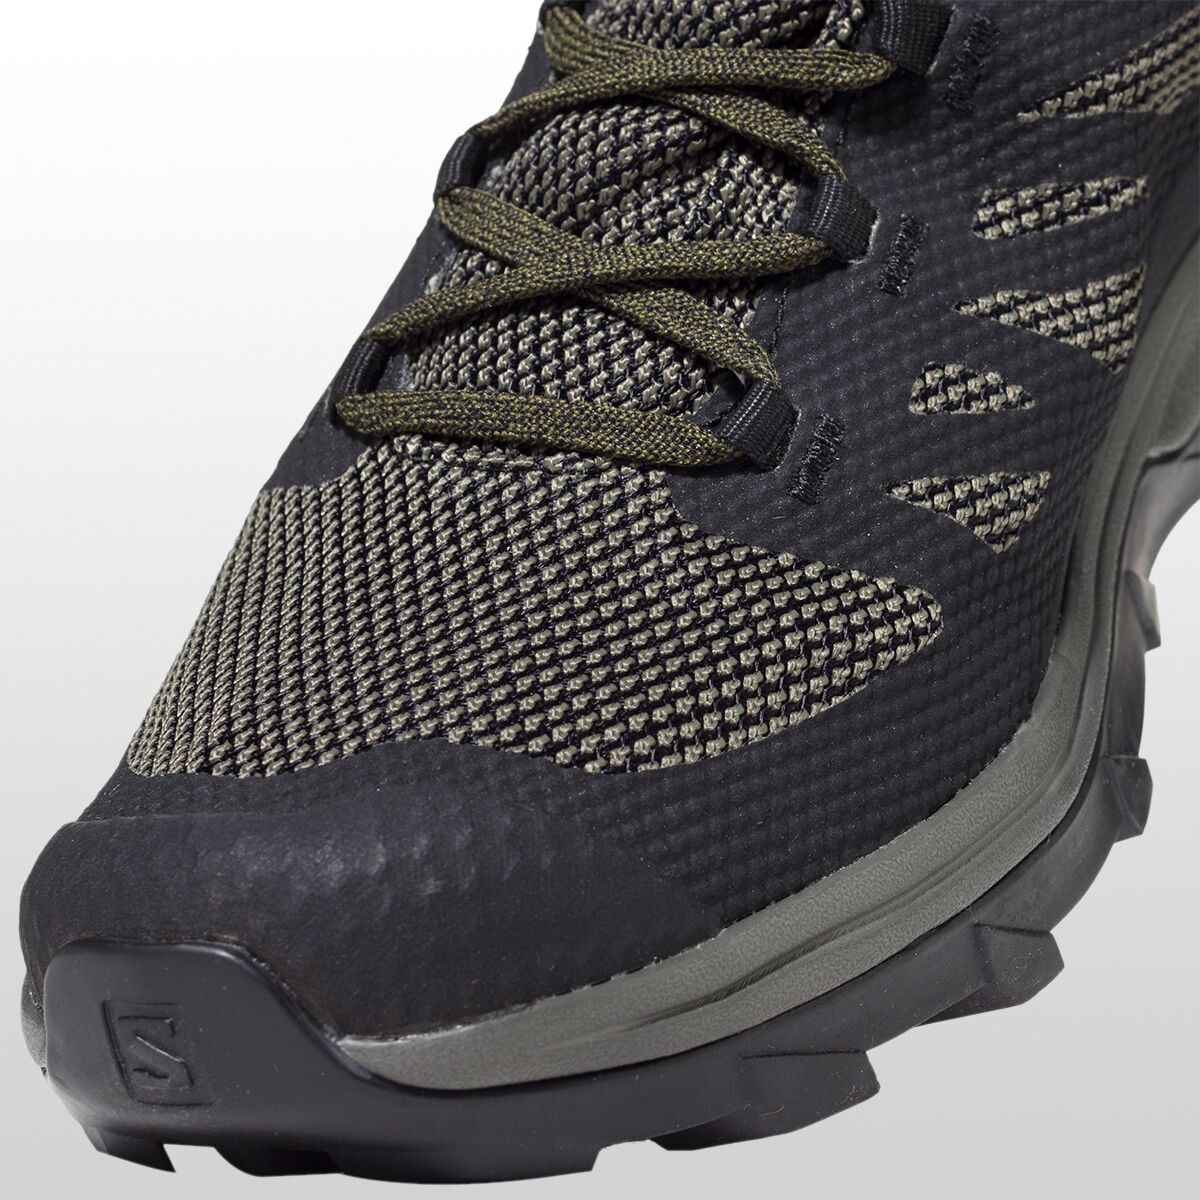 Salomon Outline Mid GTX Hiking Boot - Men's | Backcountry.com